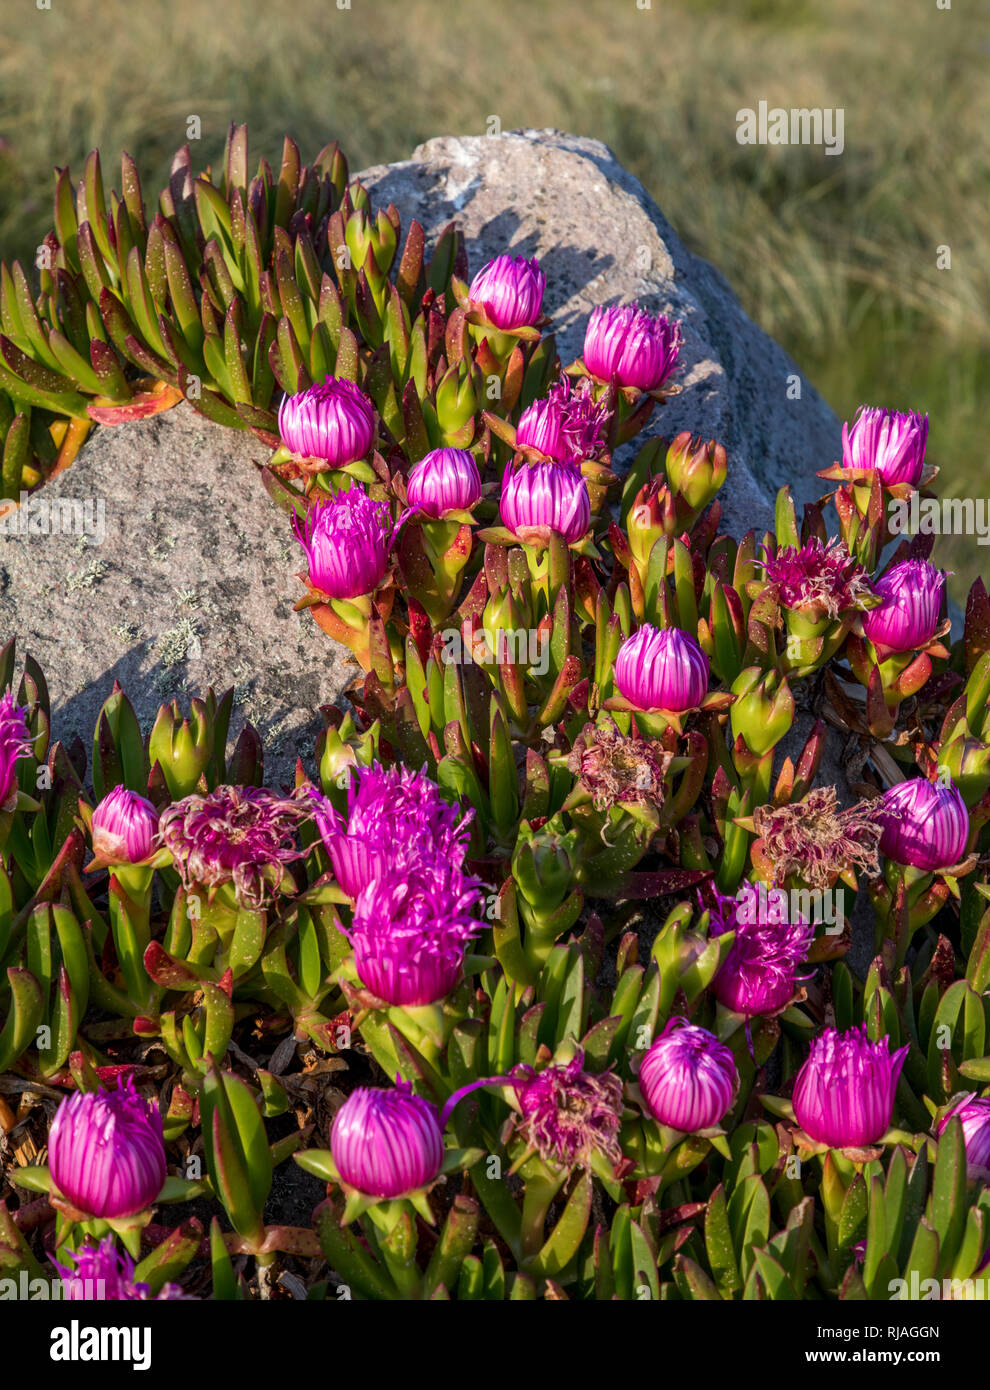 L'Alderney fig impianto (carpobrotus) con daisy come fiori viola in primavera, ha frutta commestibili ed è comunemente noto come pigface o ice-impianto. Foto Stock